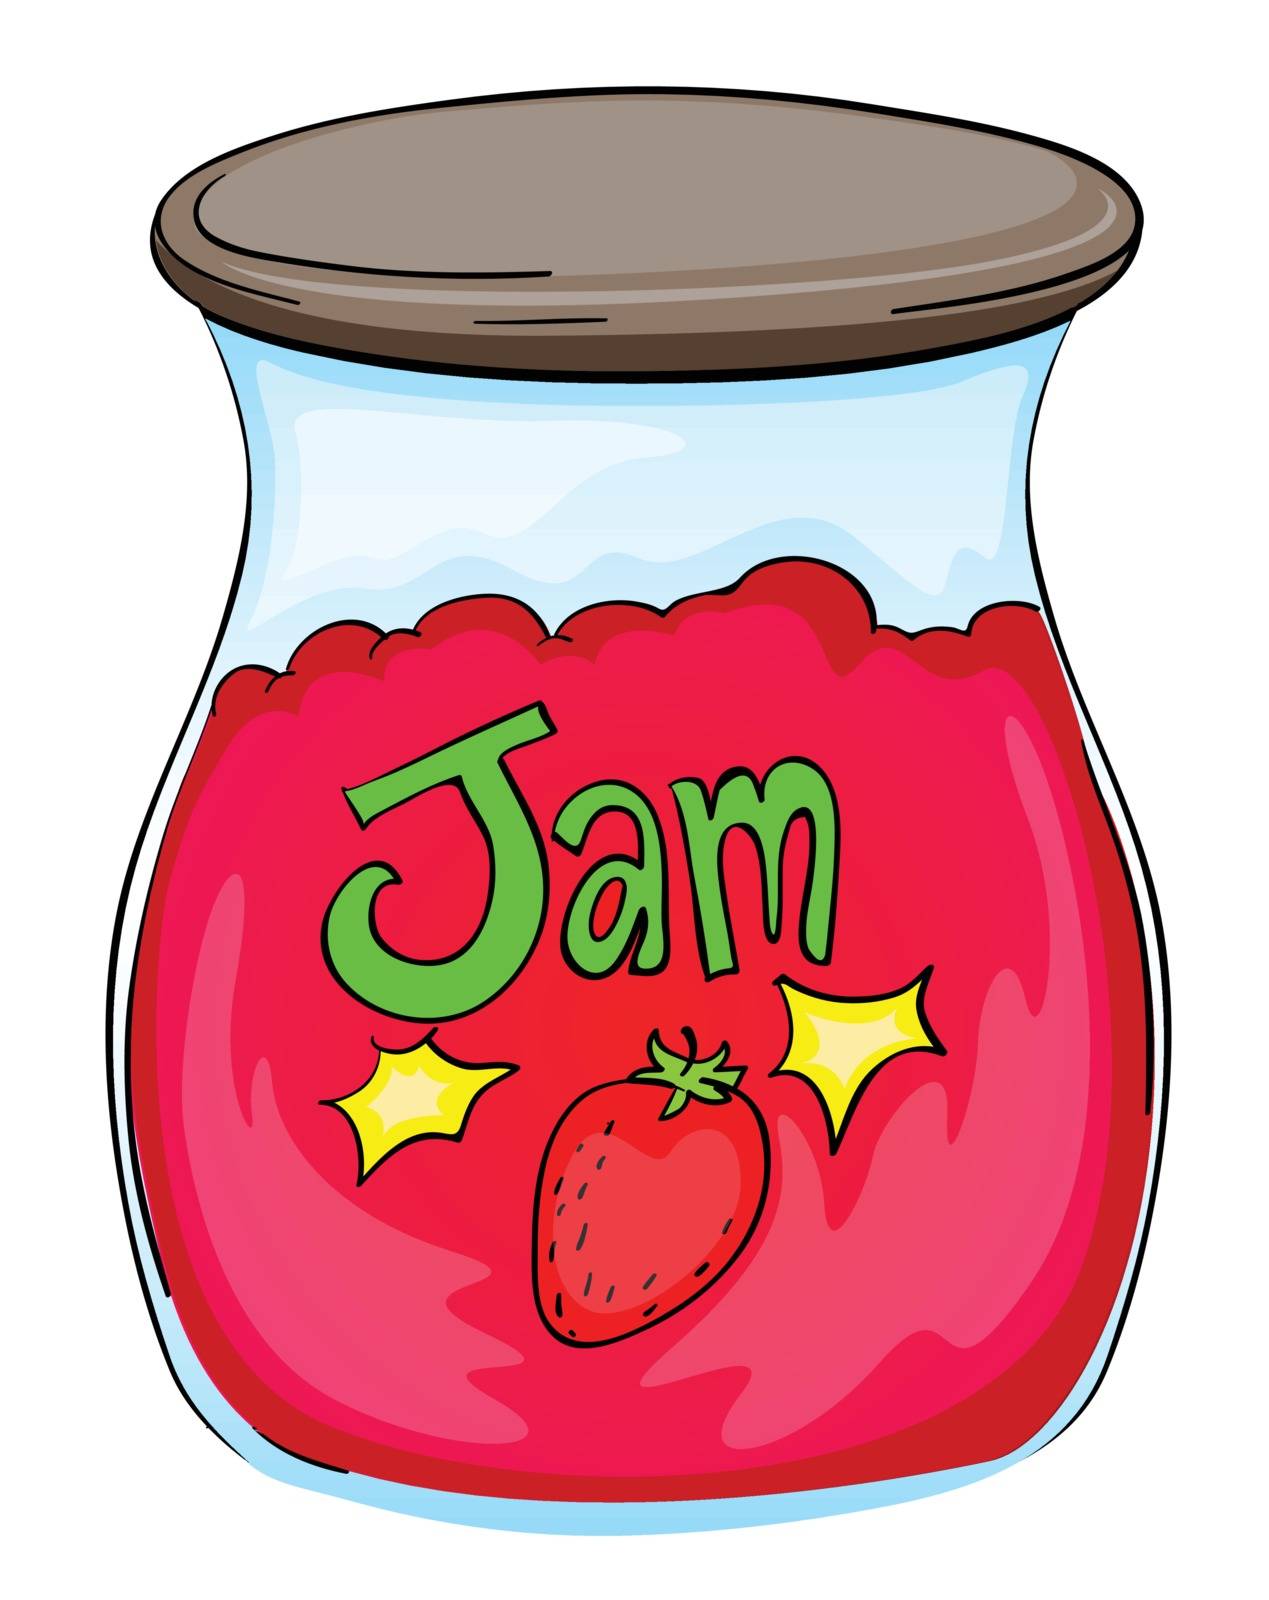 Illustration of a jam jar